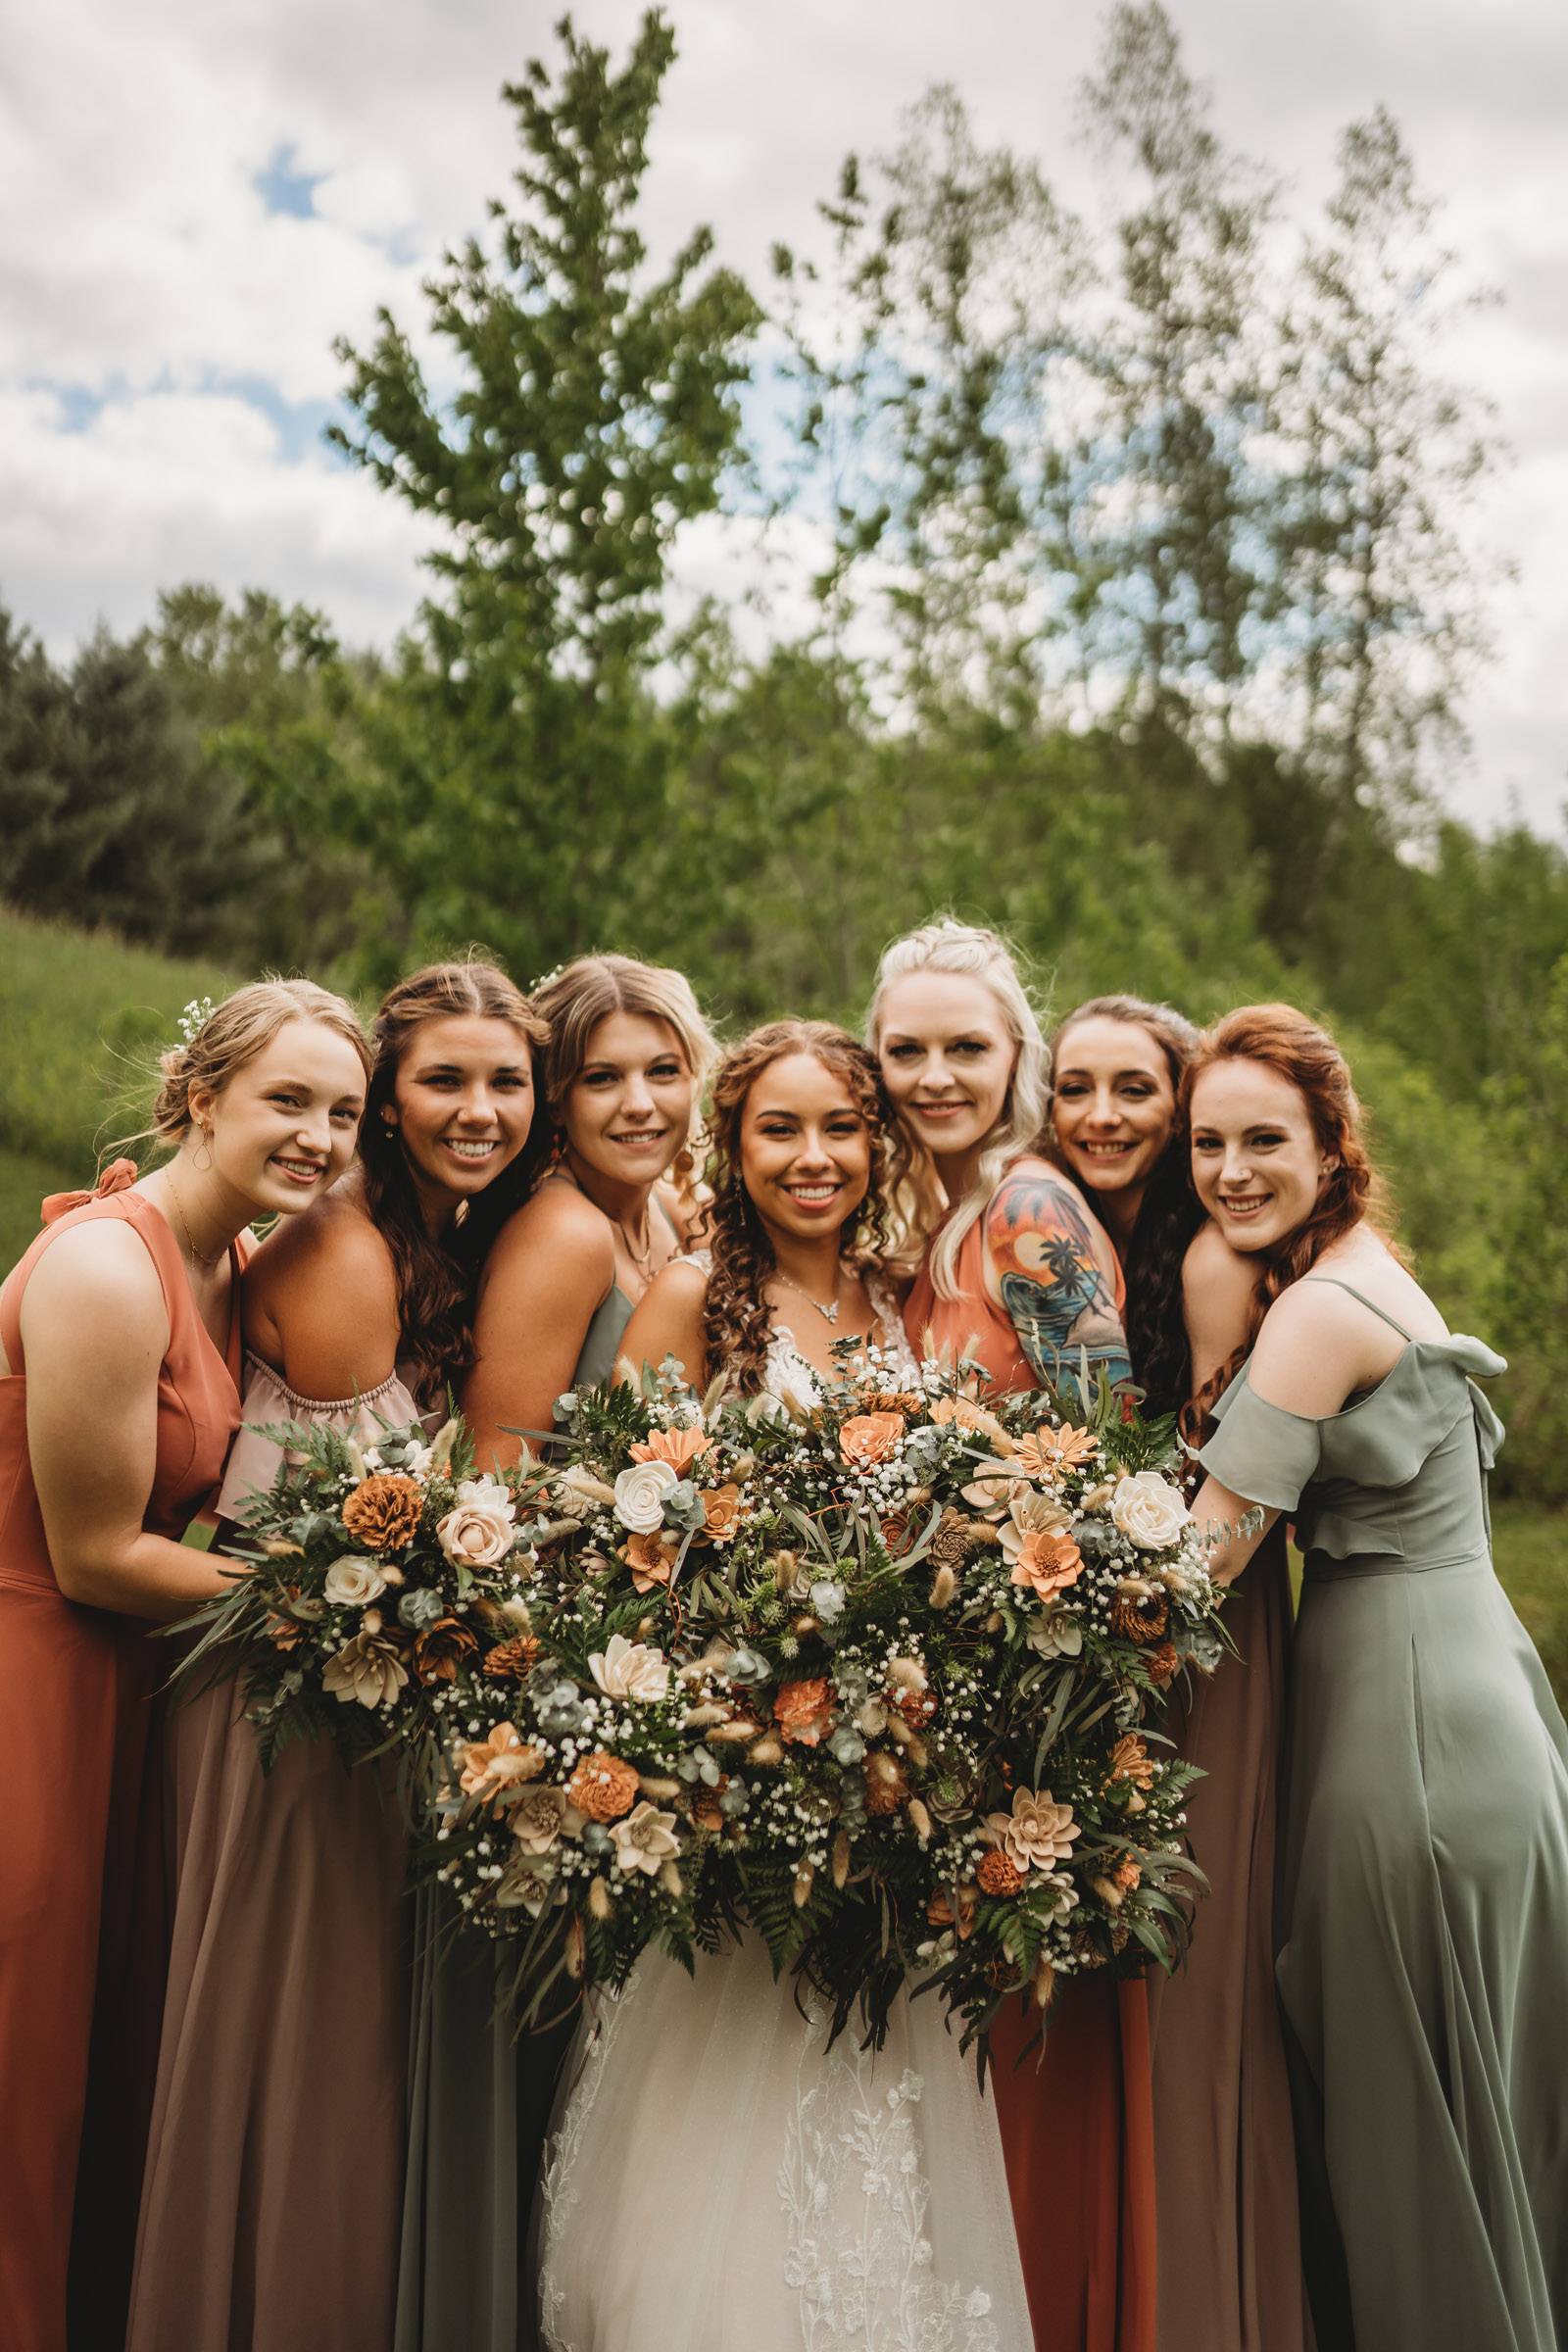 Natural Rustic Wedding Floral Arrangements